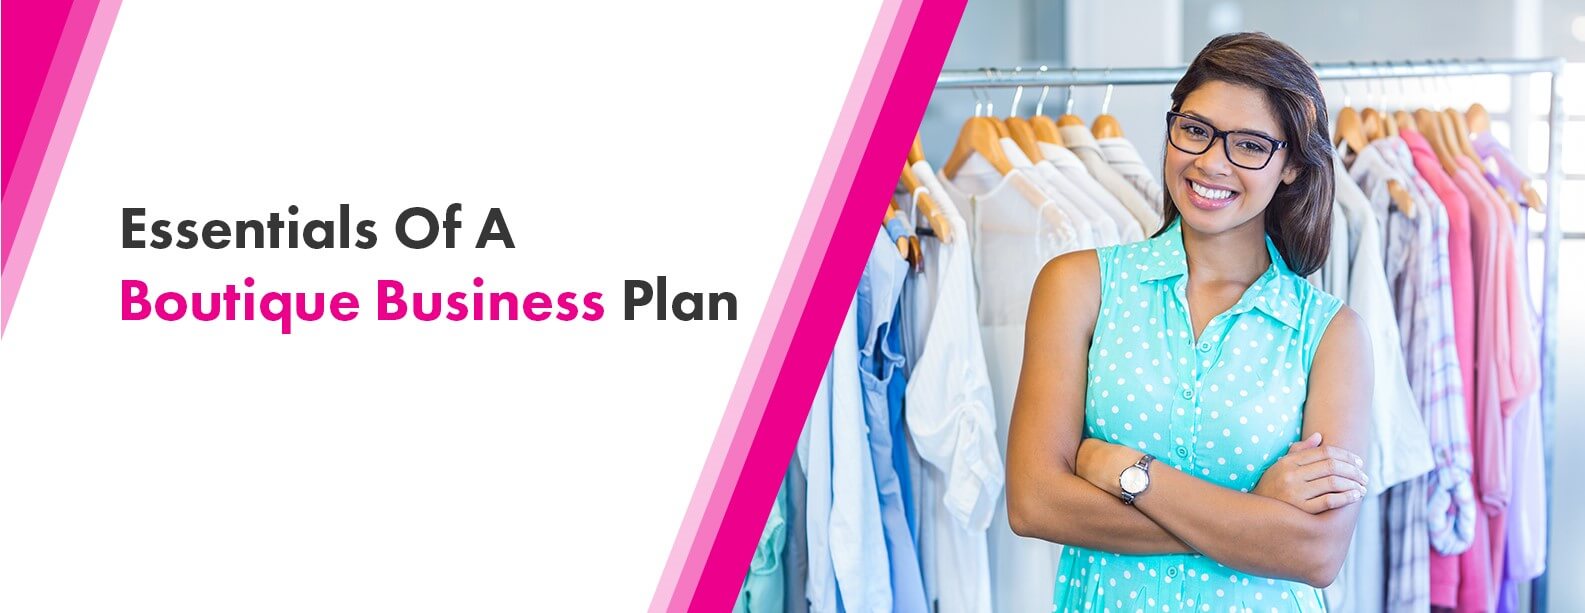 business plan boutique definition